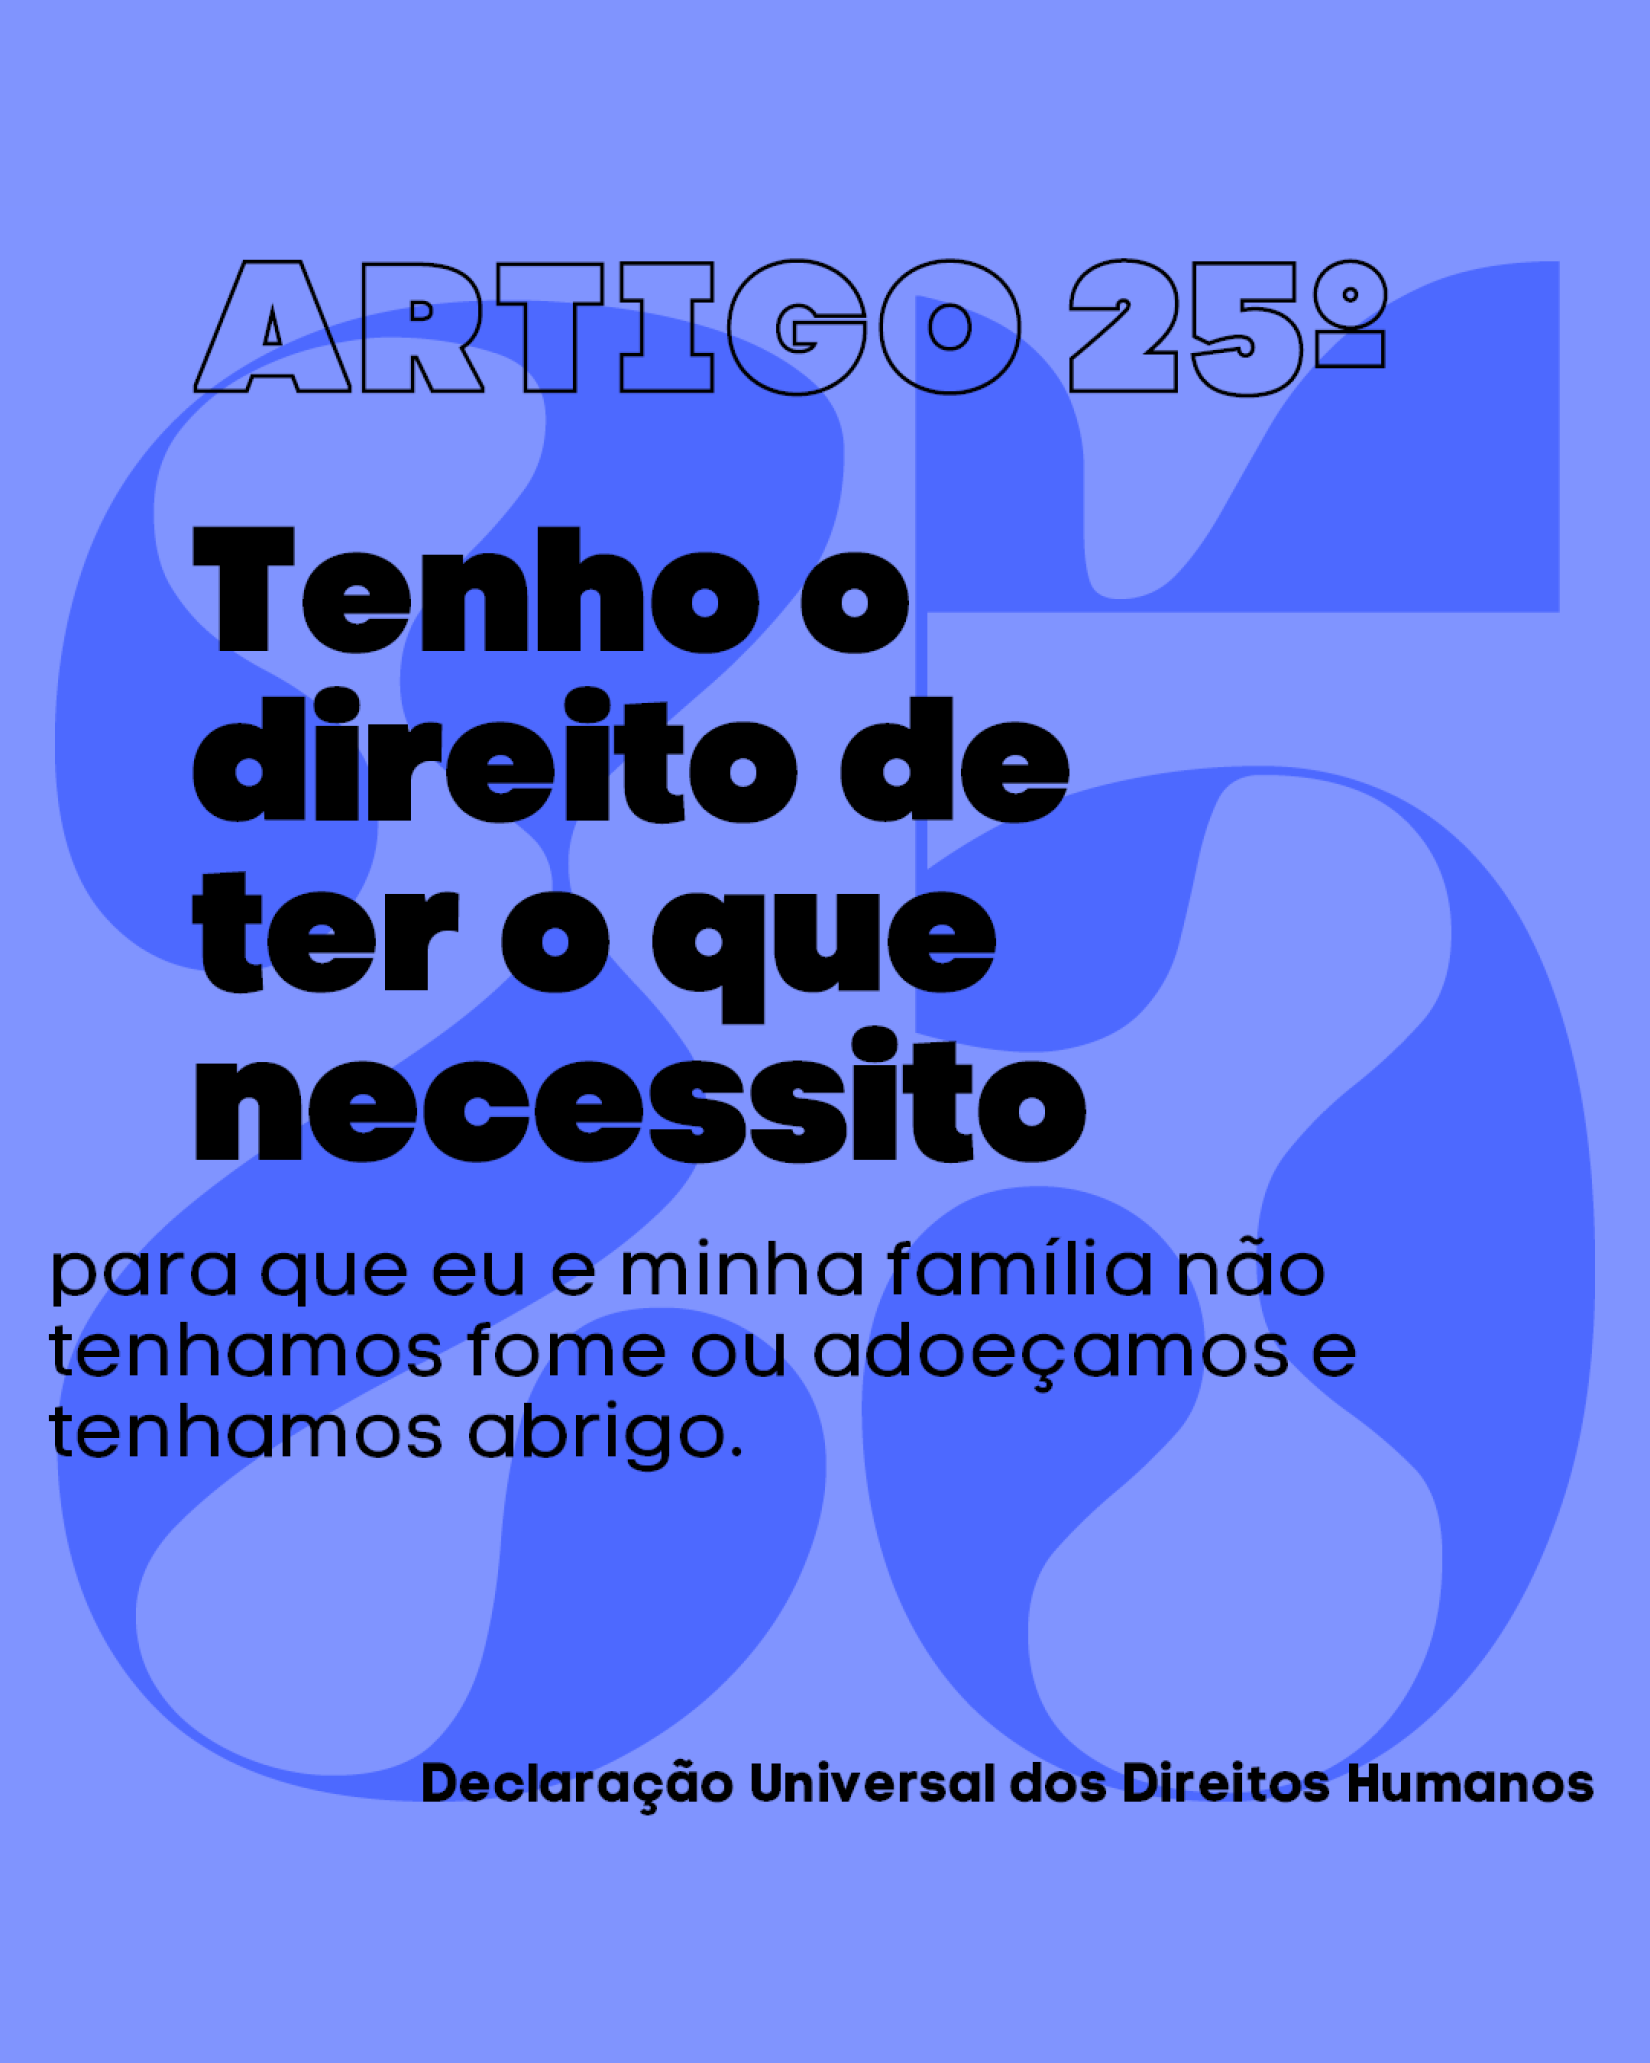 Artigo 25º da Declaração Universal dos Direitos Humanos